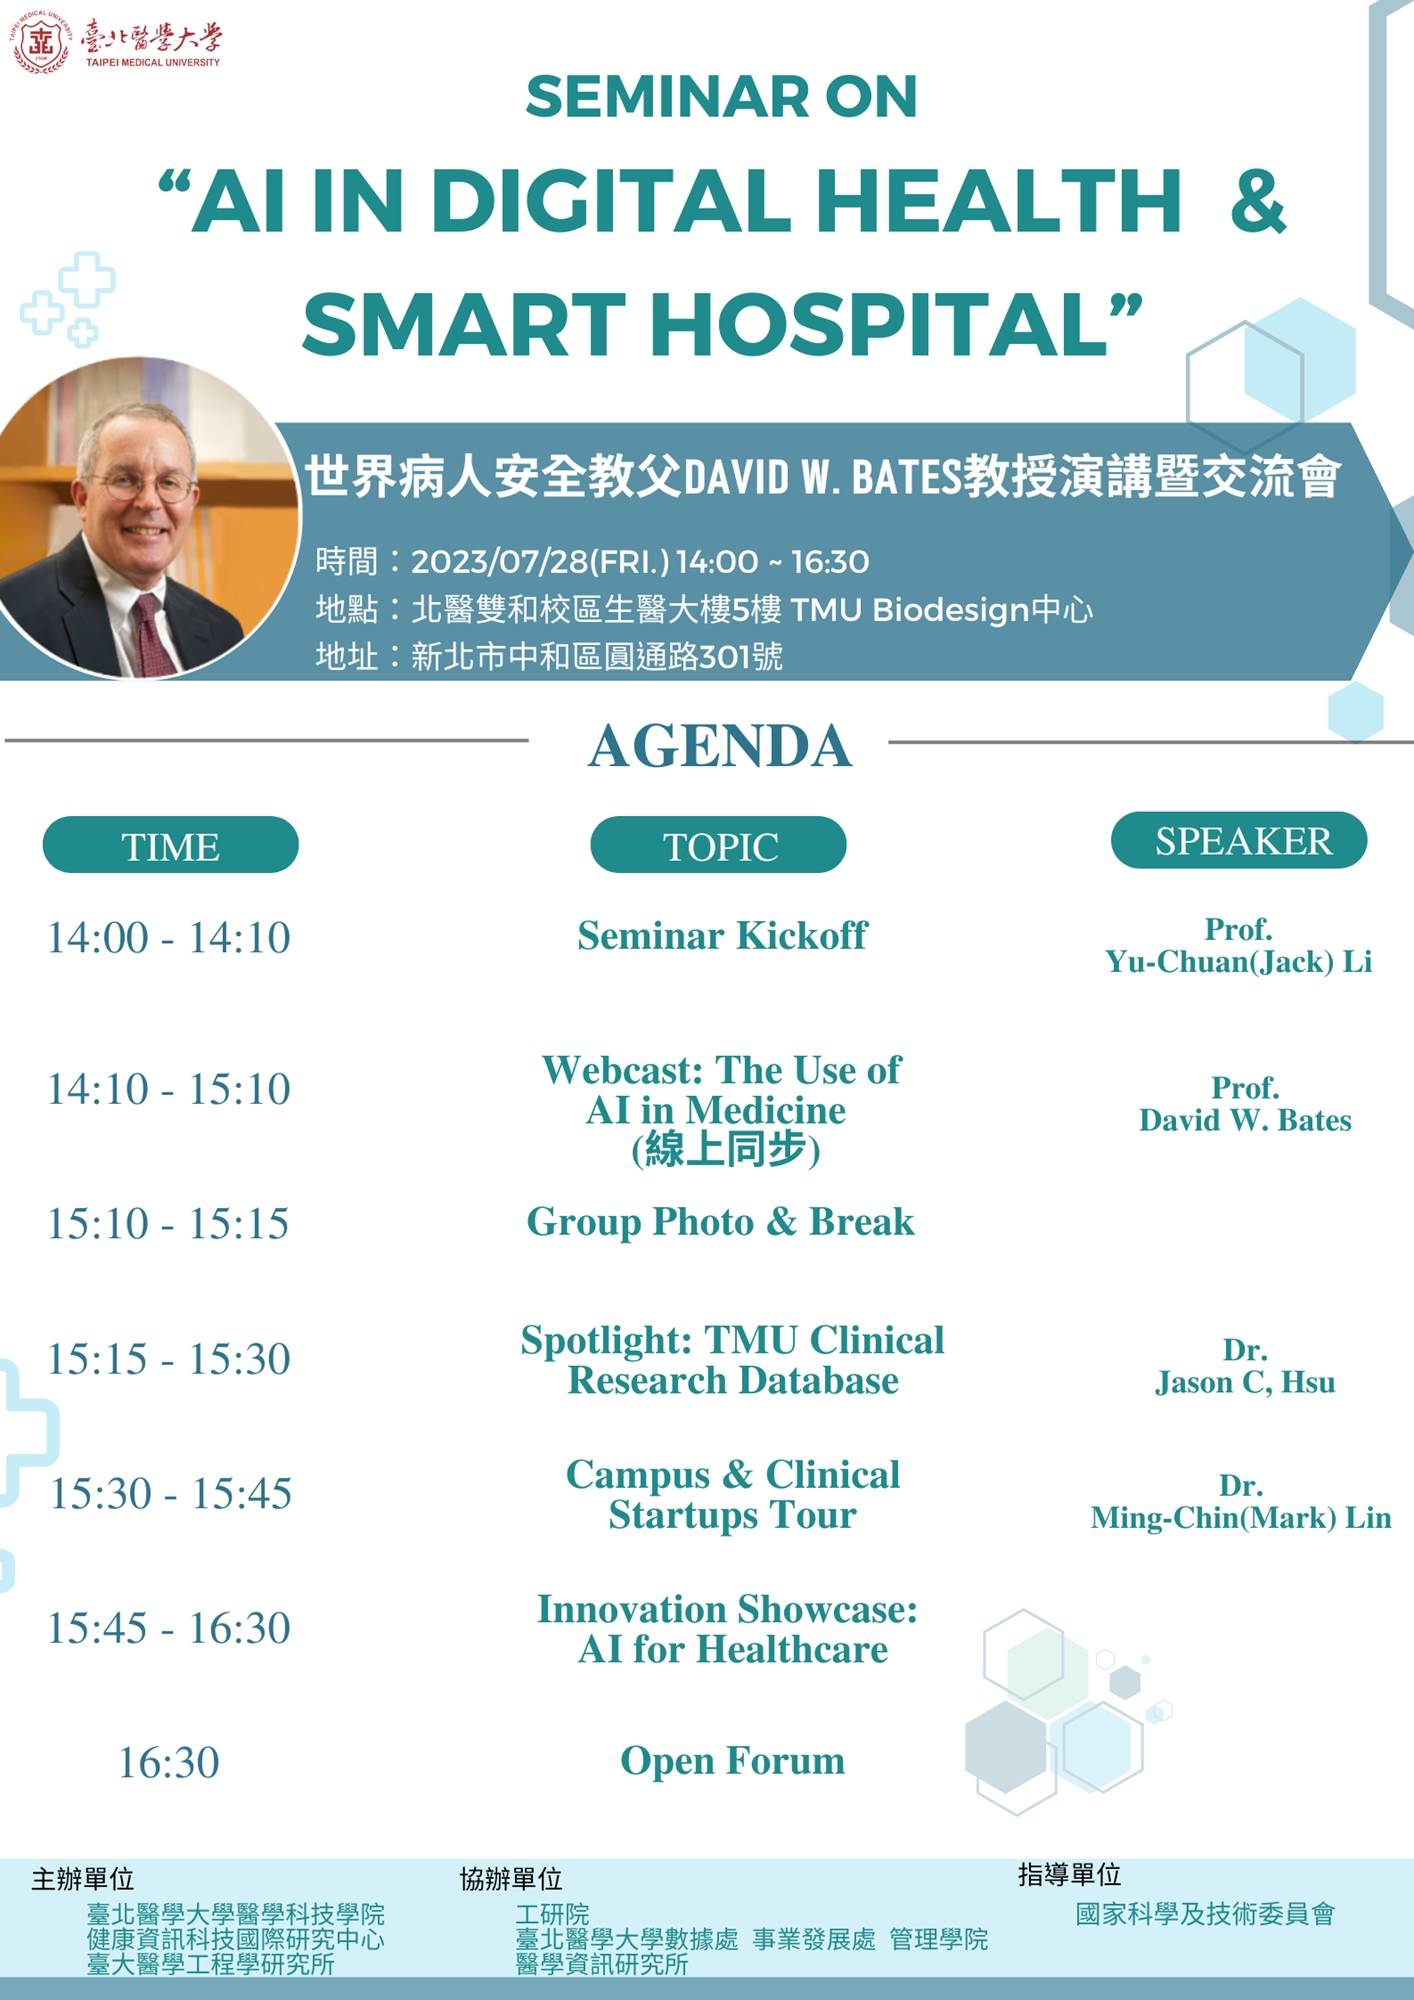 世界病人安全教父David W. Bates教授演講暨交流會-Seminar on “AI in Digital Health & Smart hospital”